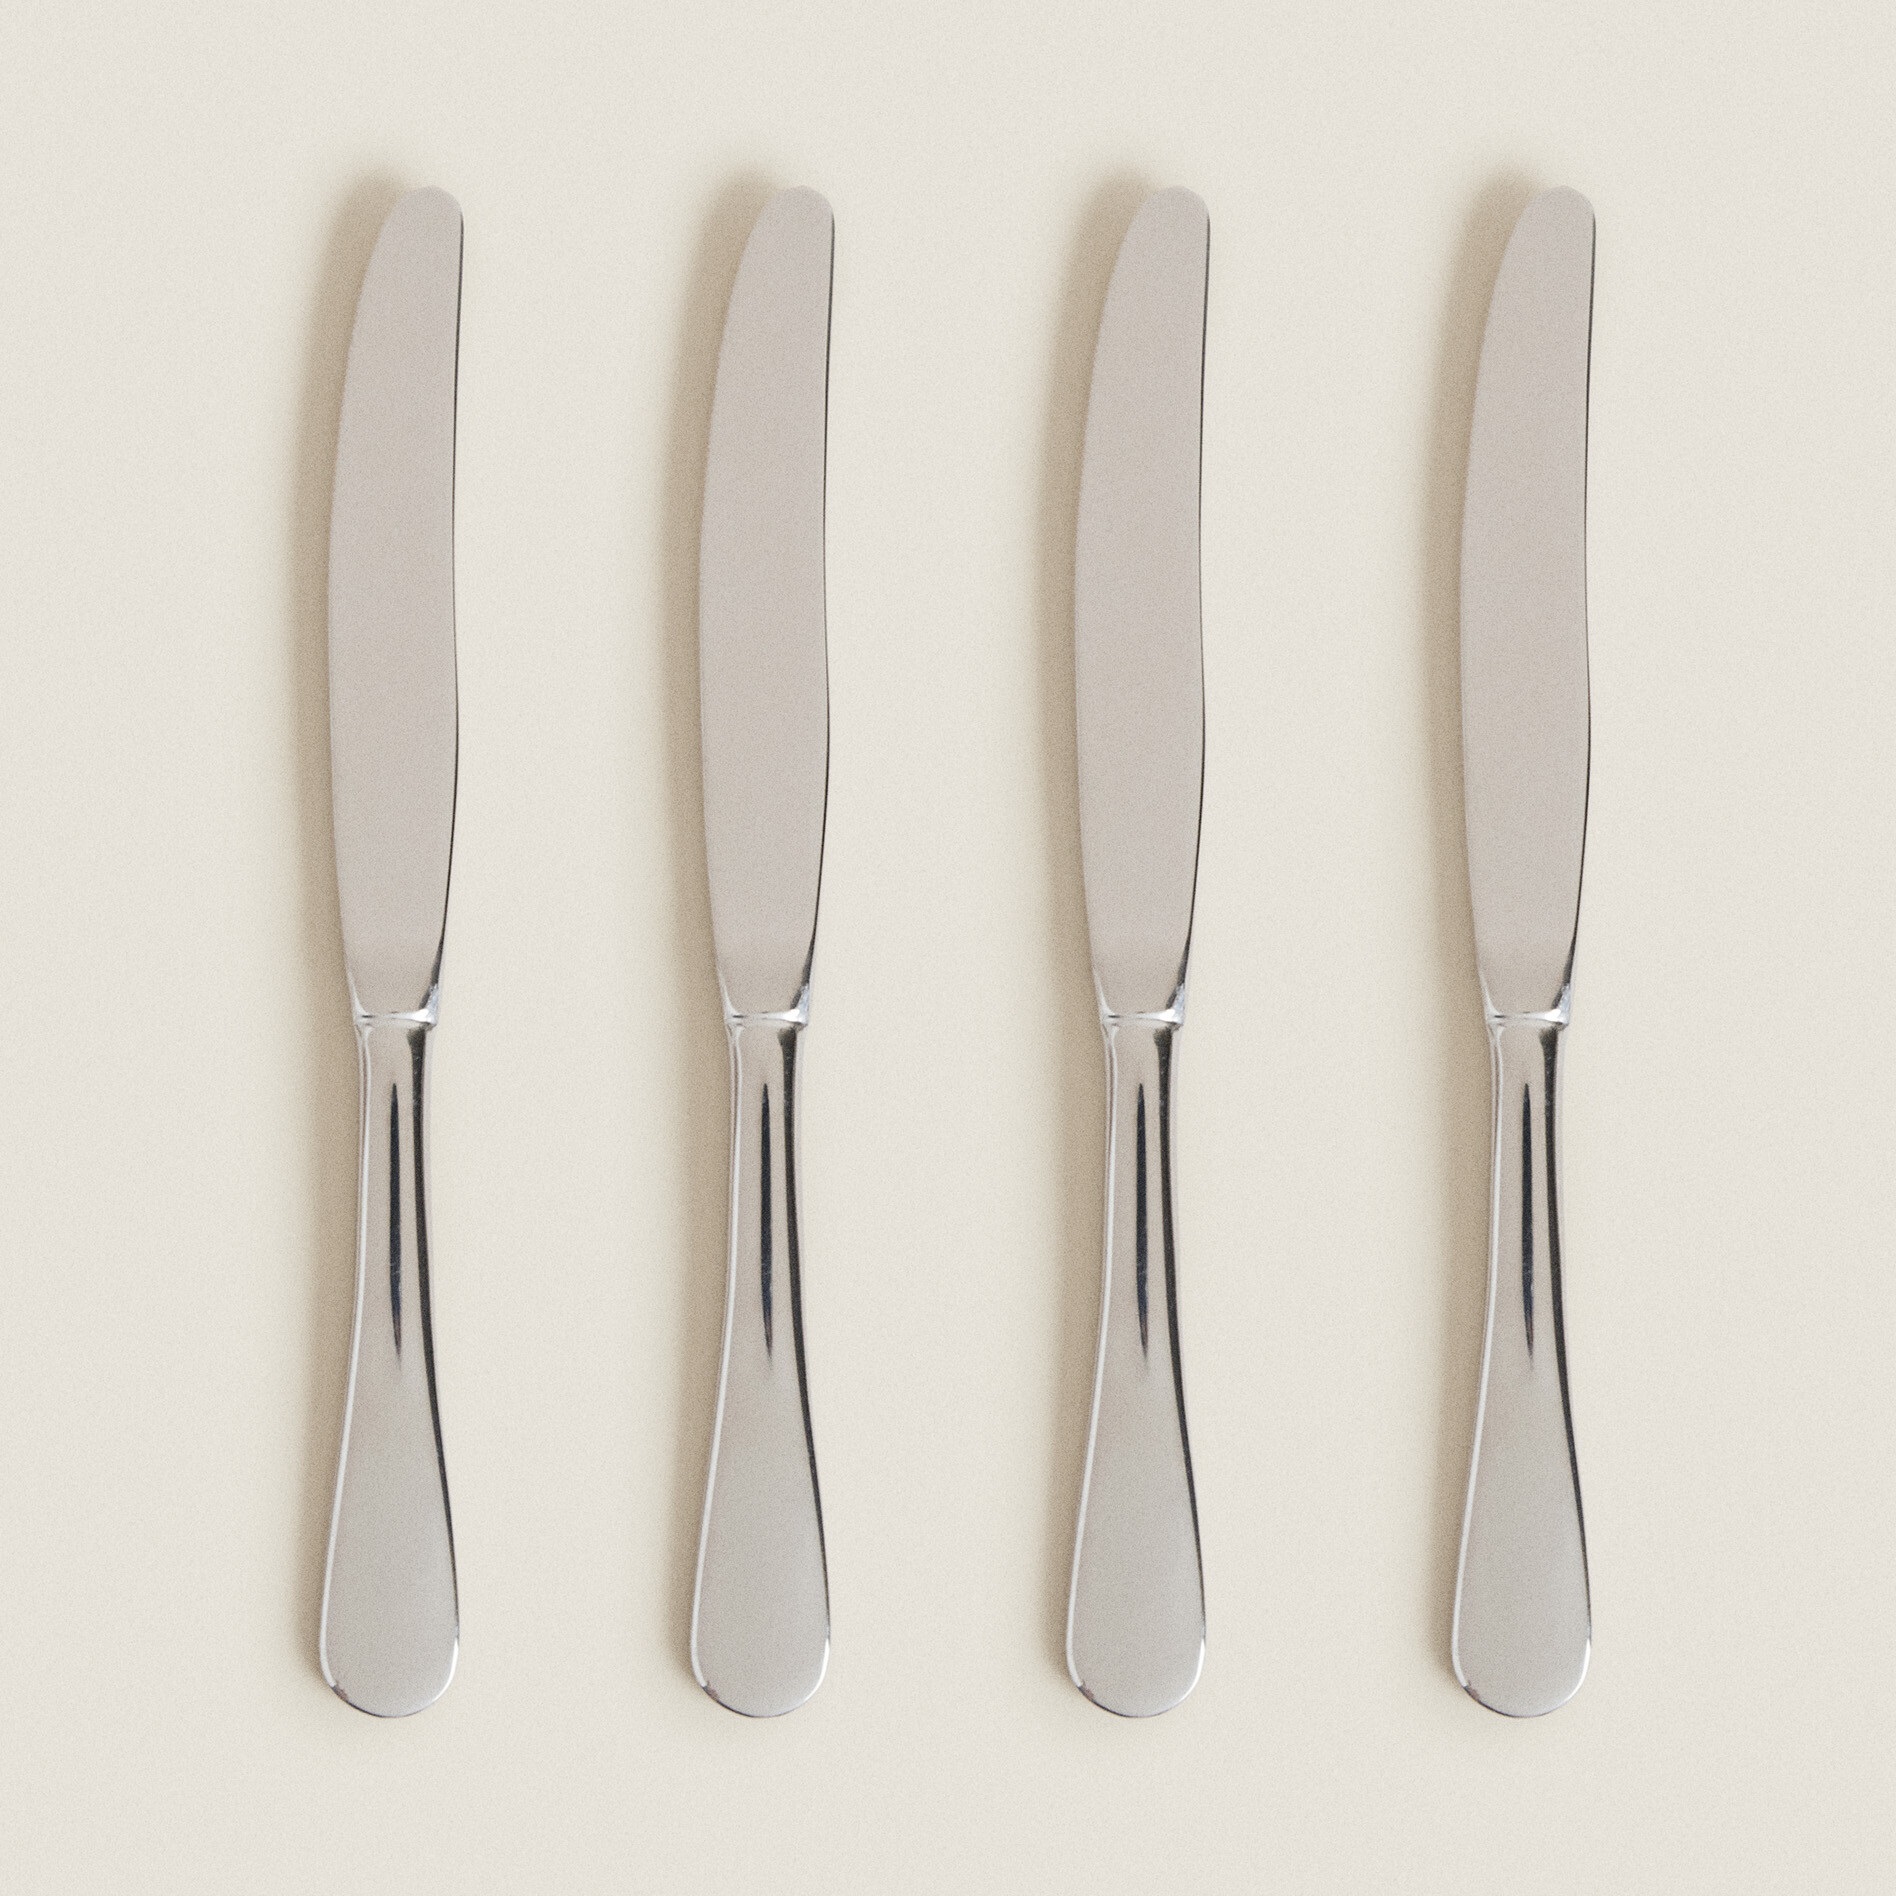 набор столовых ножей opinel vri ashwood из 4 х штук Набор ножей Zara Home 4-piece Classic Knife, 4 шт, серебристый